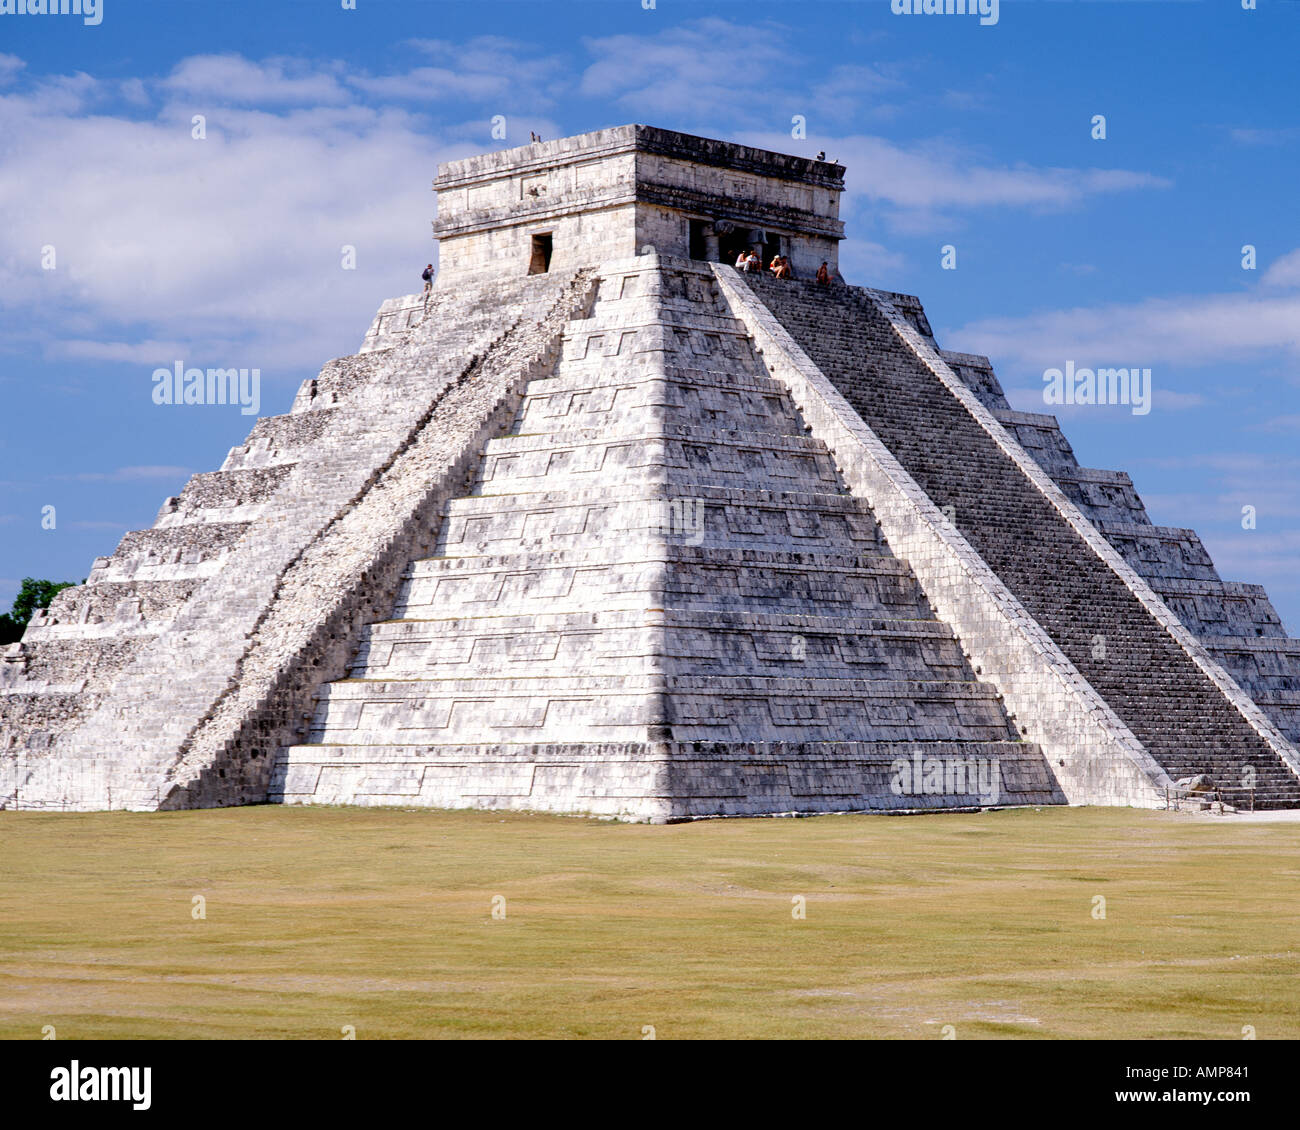 El Castillo, l'élément central de la pyramide Chichen Itza ruines Maya au Mexique. Banque D'Images